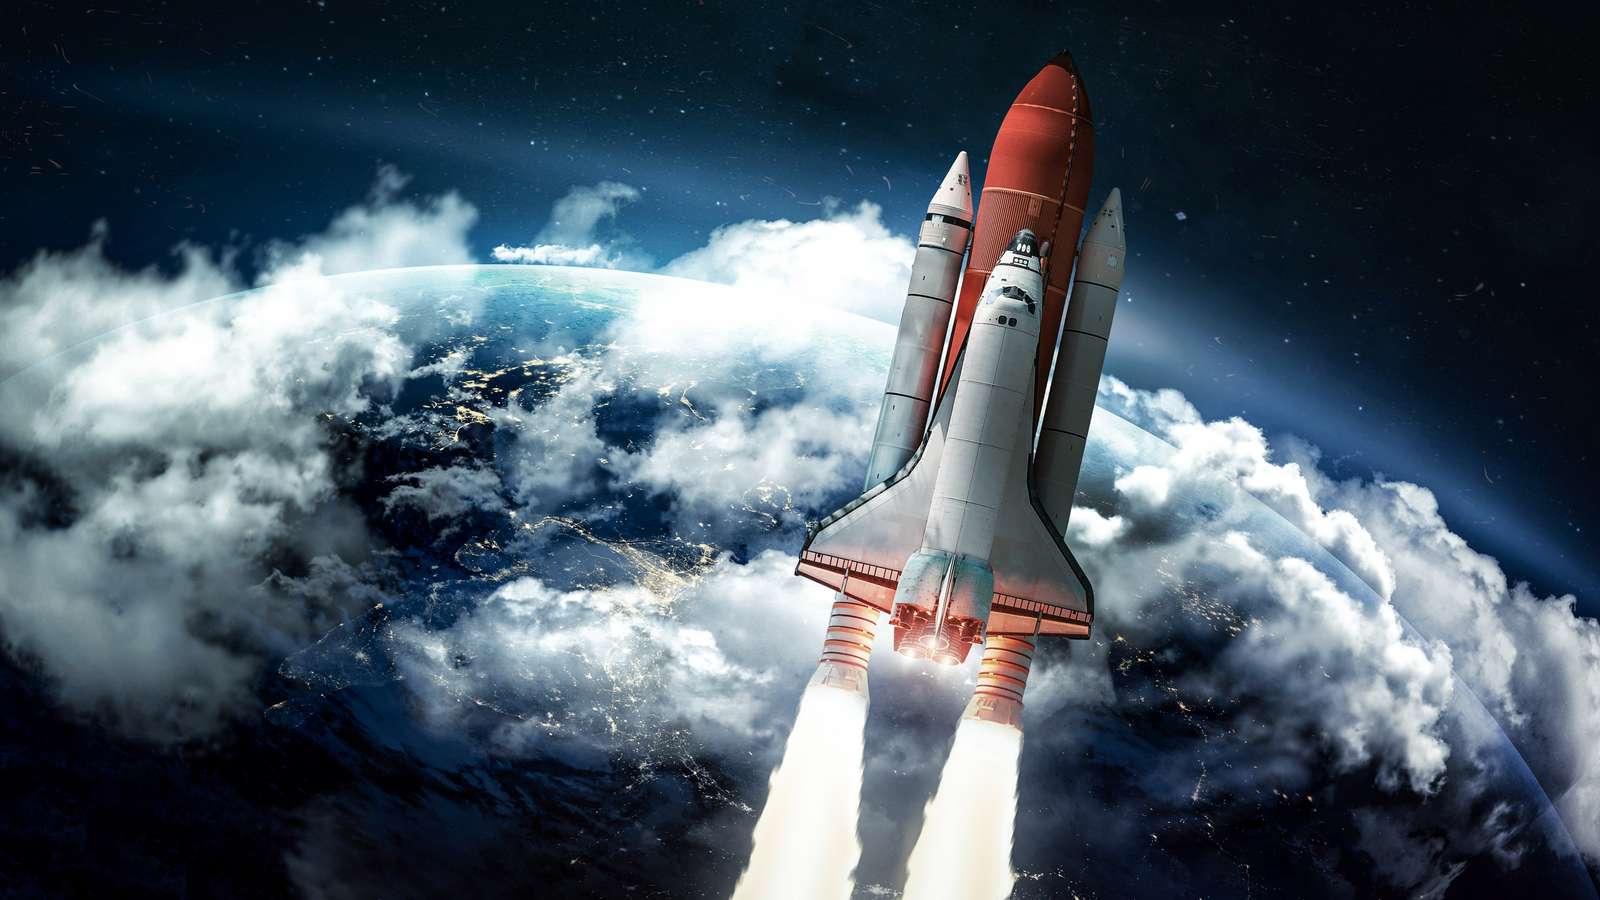 полет ракеты в космос пазл онлайн из фото